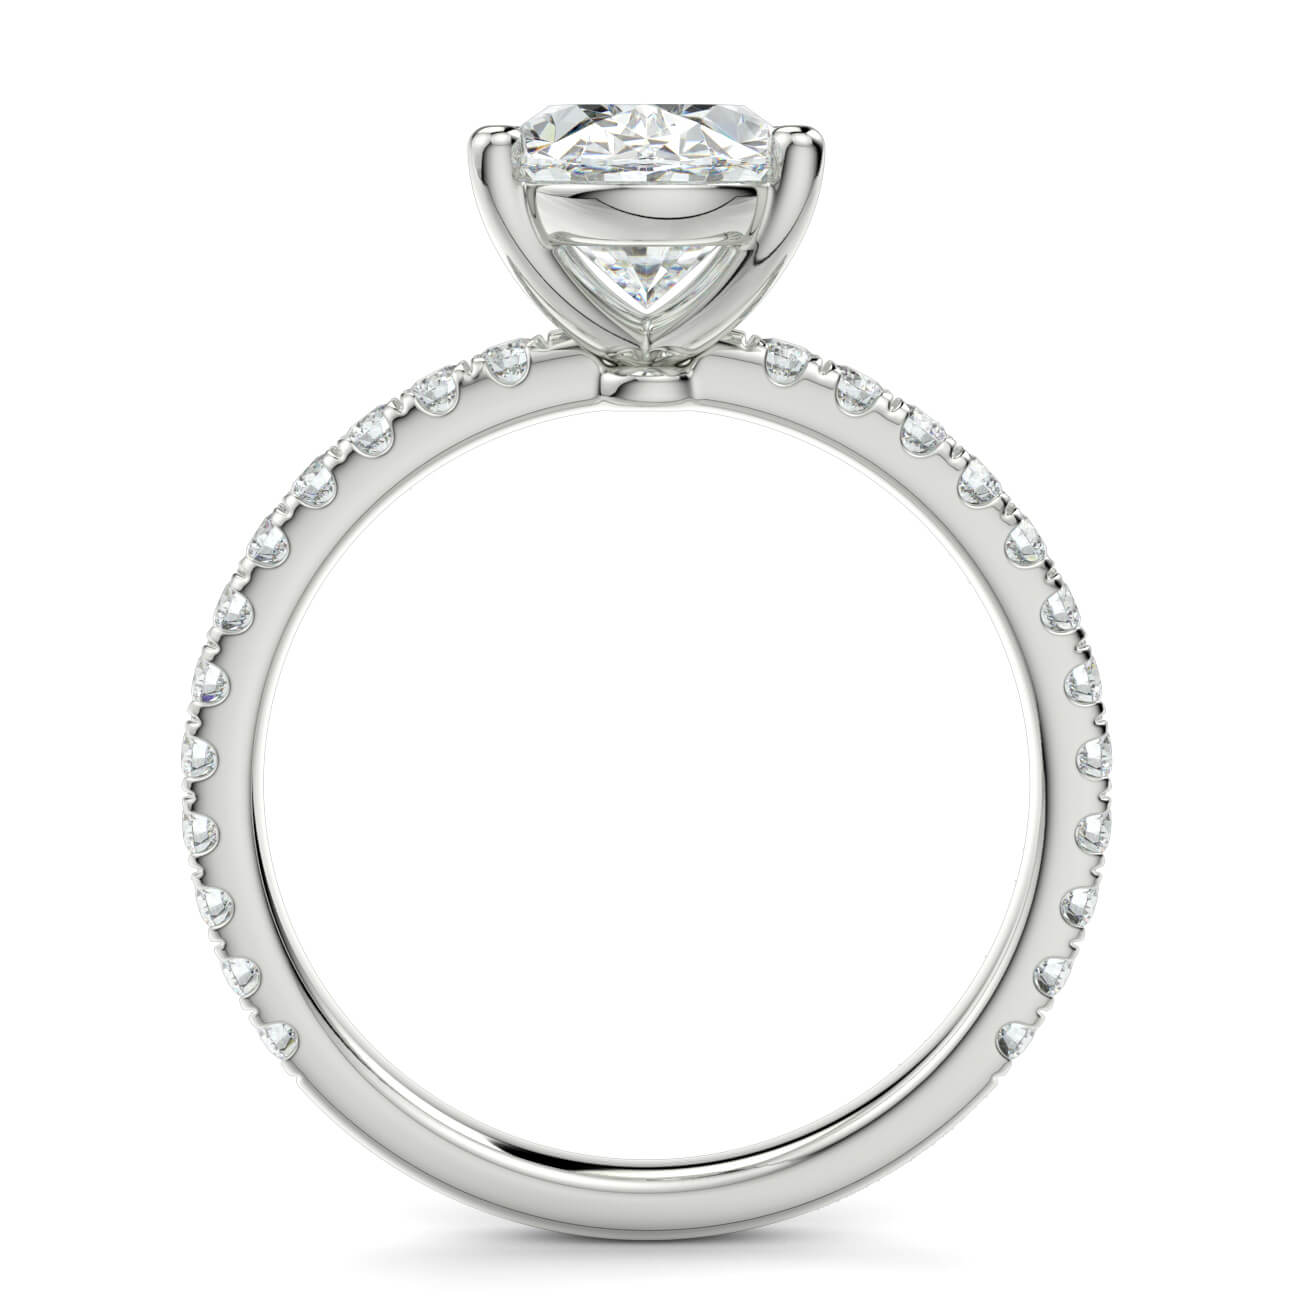 Delicate ‘Liat’ Oval Shape Diamond Engagement Ring in 18k White Gold – Australian Diamond Network